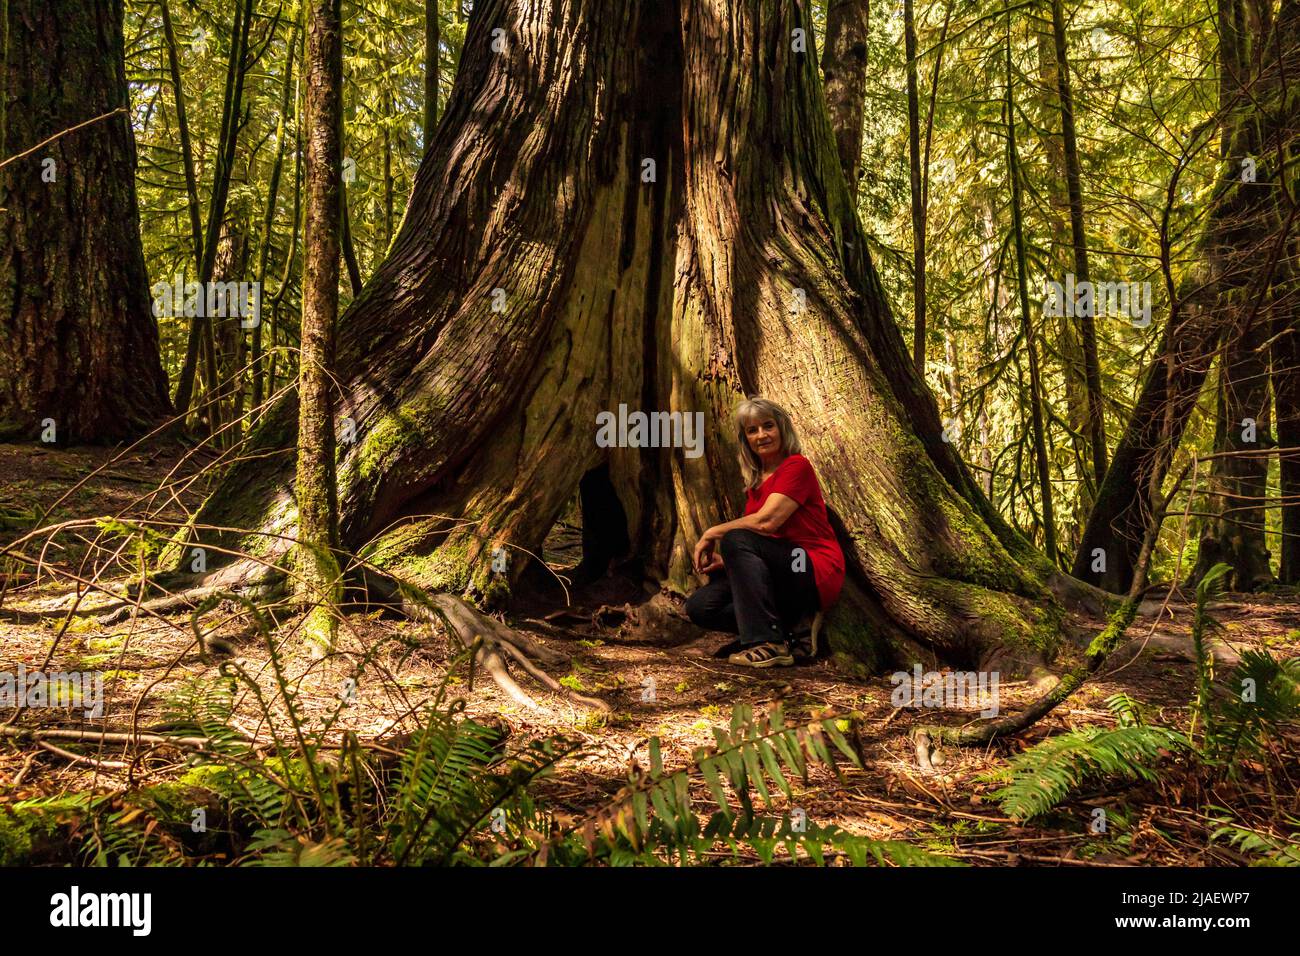 Selbstportrait mit rotem Hemd, sitzend an einem riesigen, alten Zedernbaum auf Vancouver Island, British Columbia, Kanada. Stockfoto